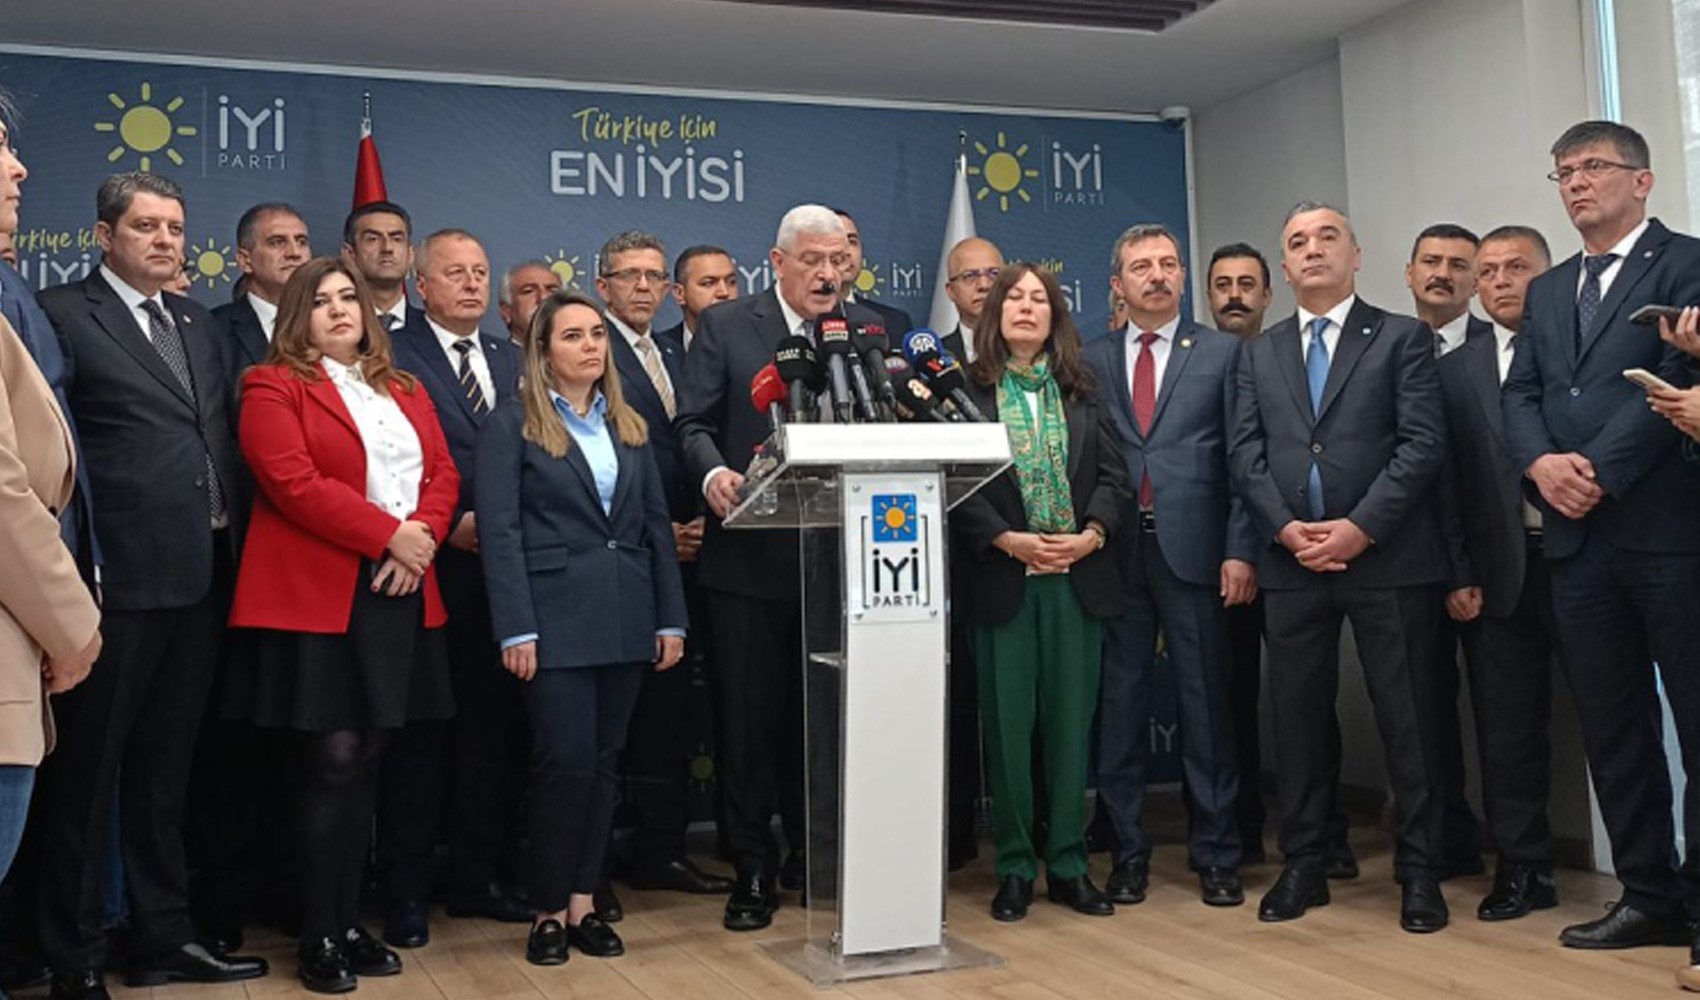 İYİ Parti Genel Başkanı Müsavat Dervişoğlu, Başkanlık Divanı'nı açıkladı! Listede kimler var?